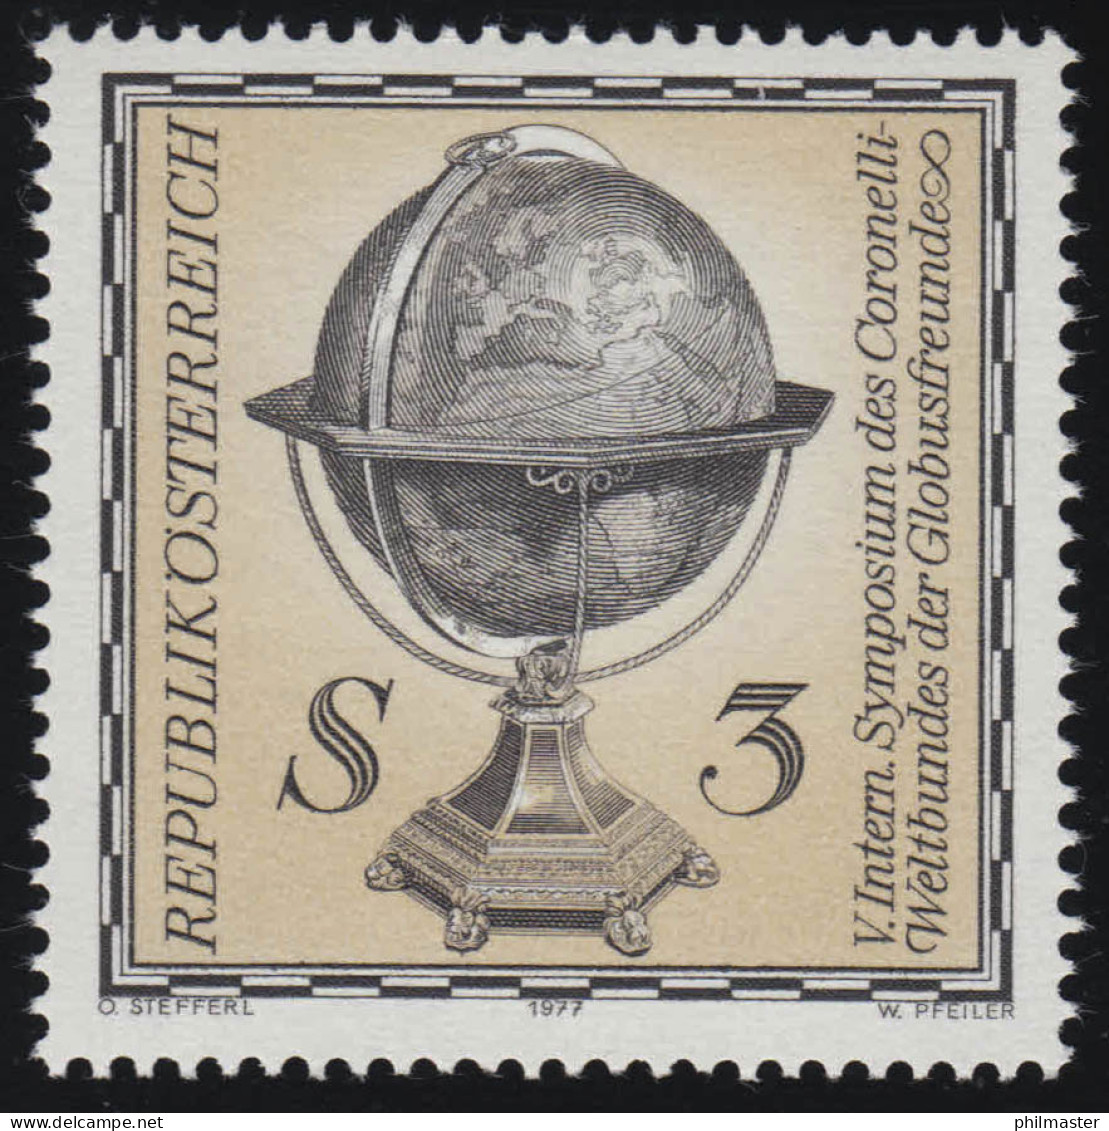 1554 Internationales Symposium Coronelli Weltbund, Erdglobus, 3 S, Postfrisch ** - Ungebraucht